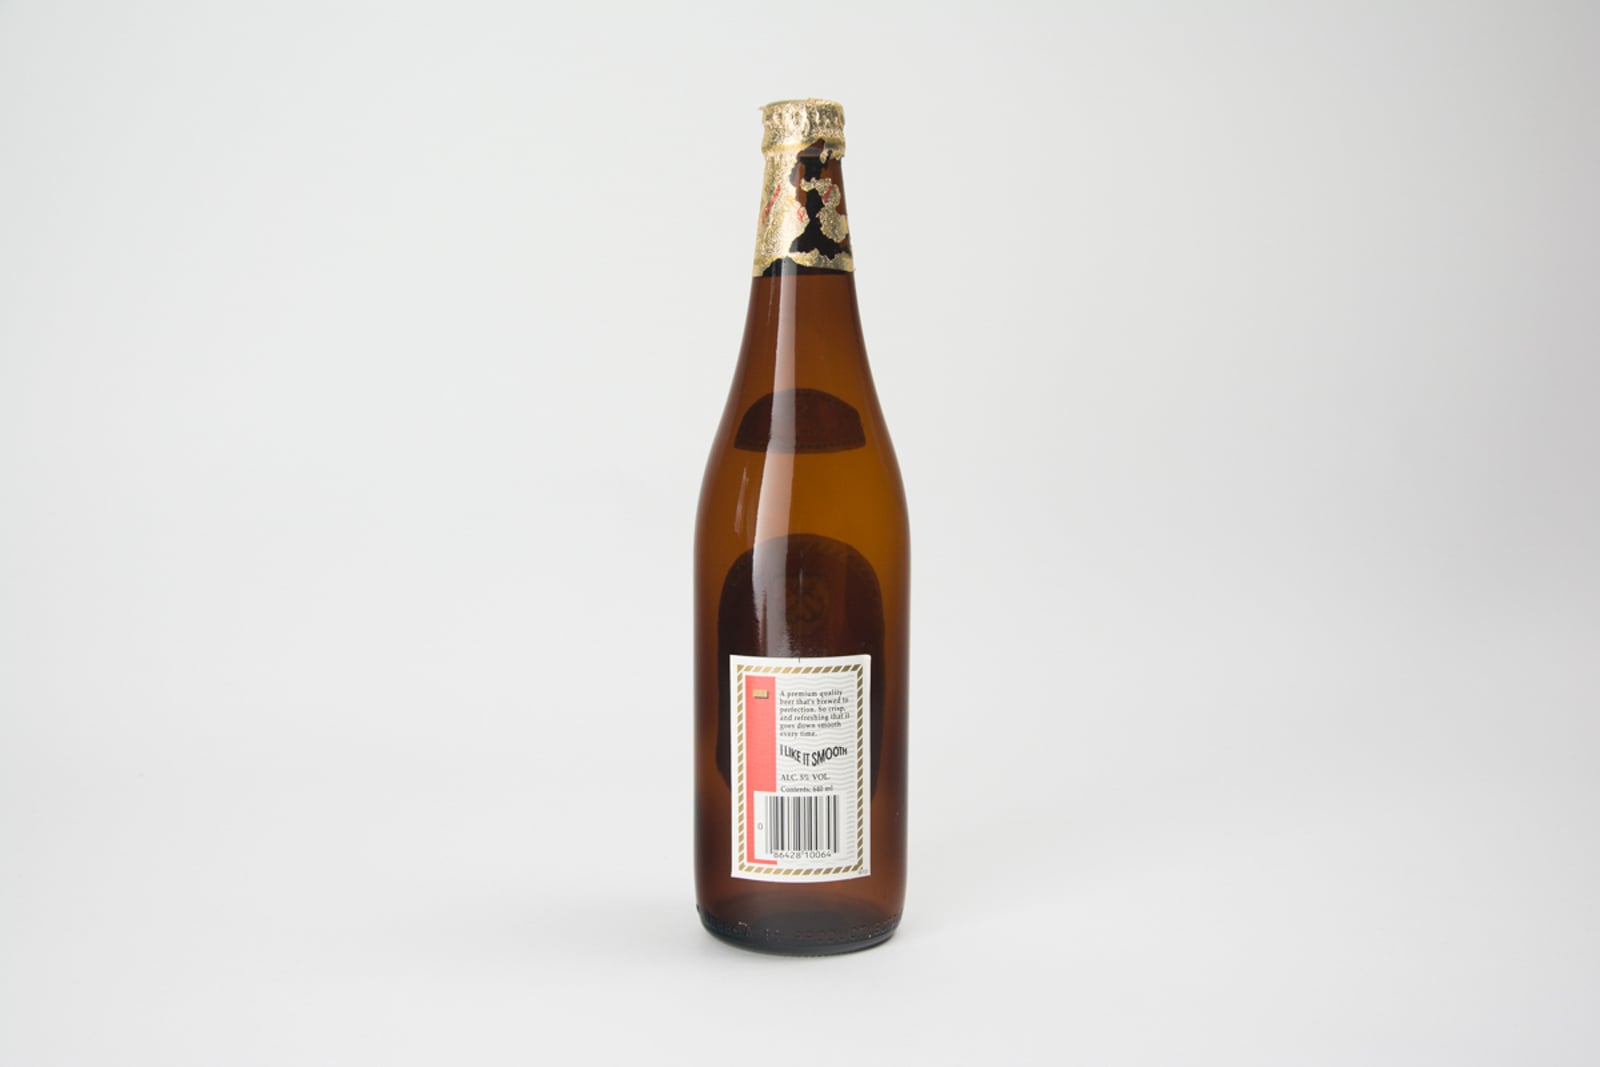 Anchor Beer "Pilsener" Bottle, 640ml